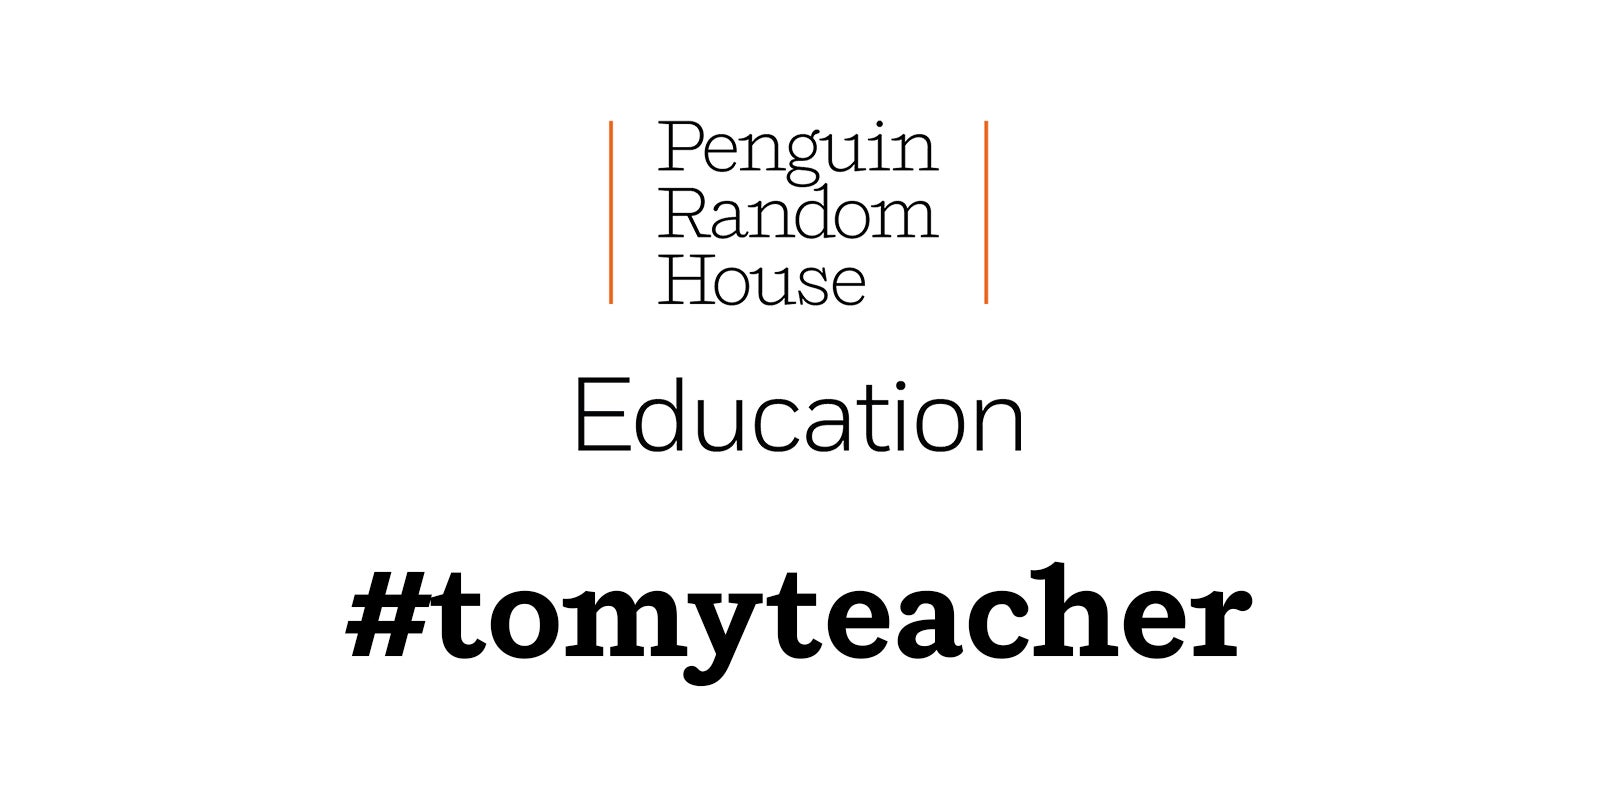 NCTE and Penguin Random House Celebrate Teachers #tomyteacher